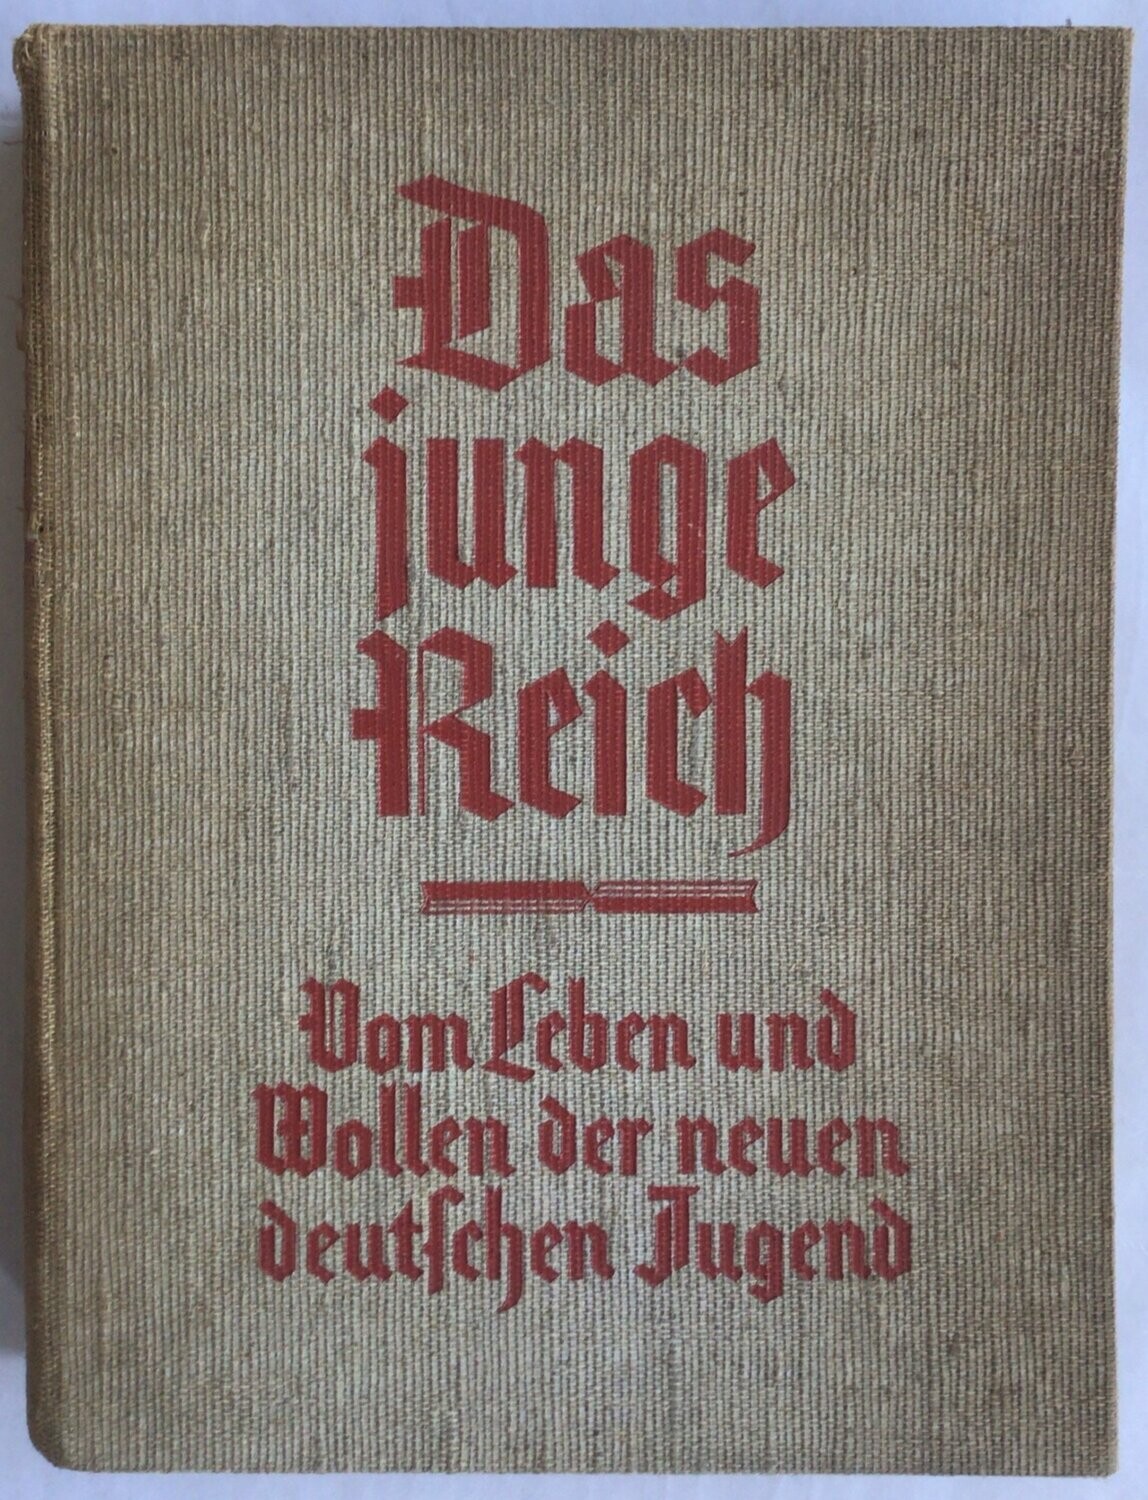 Bartelmäs: Das junge Reich. Ganzleinenausgabe aus dem Jahr 1933.